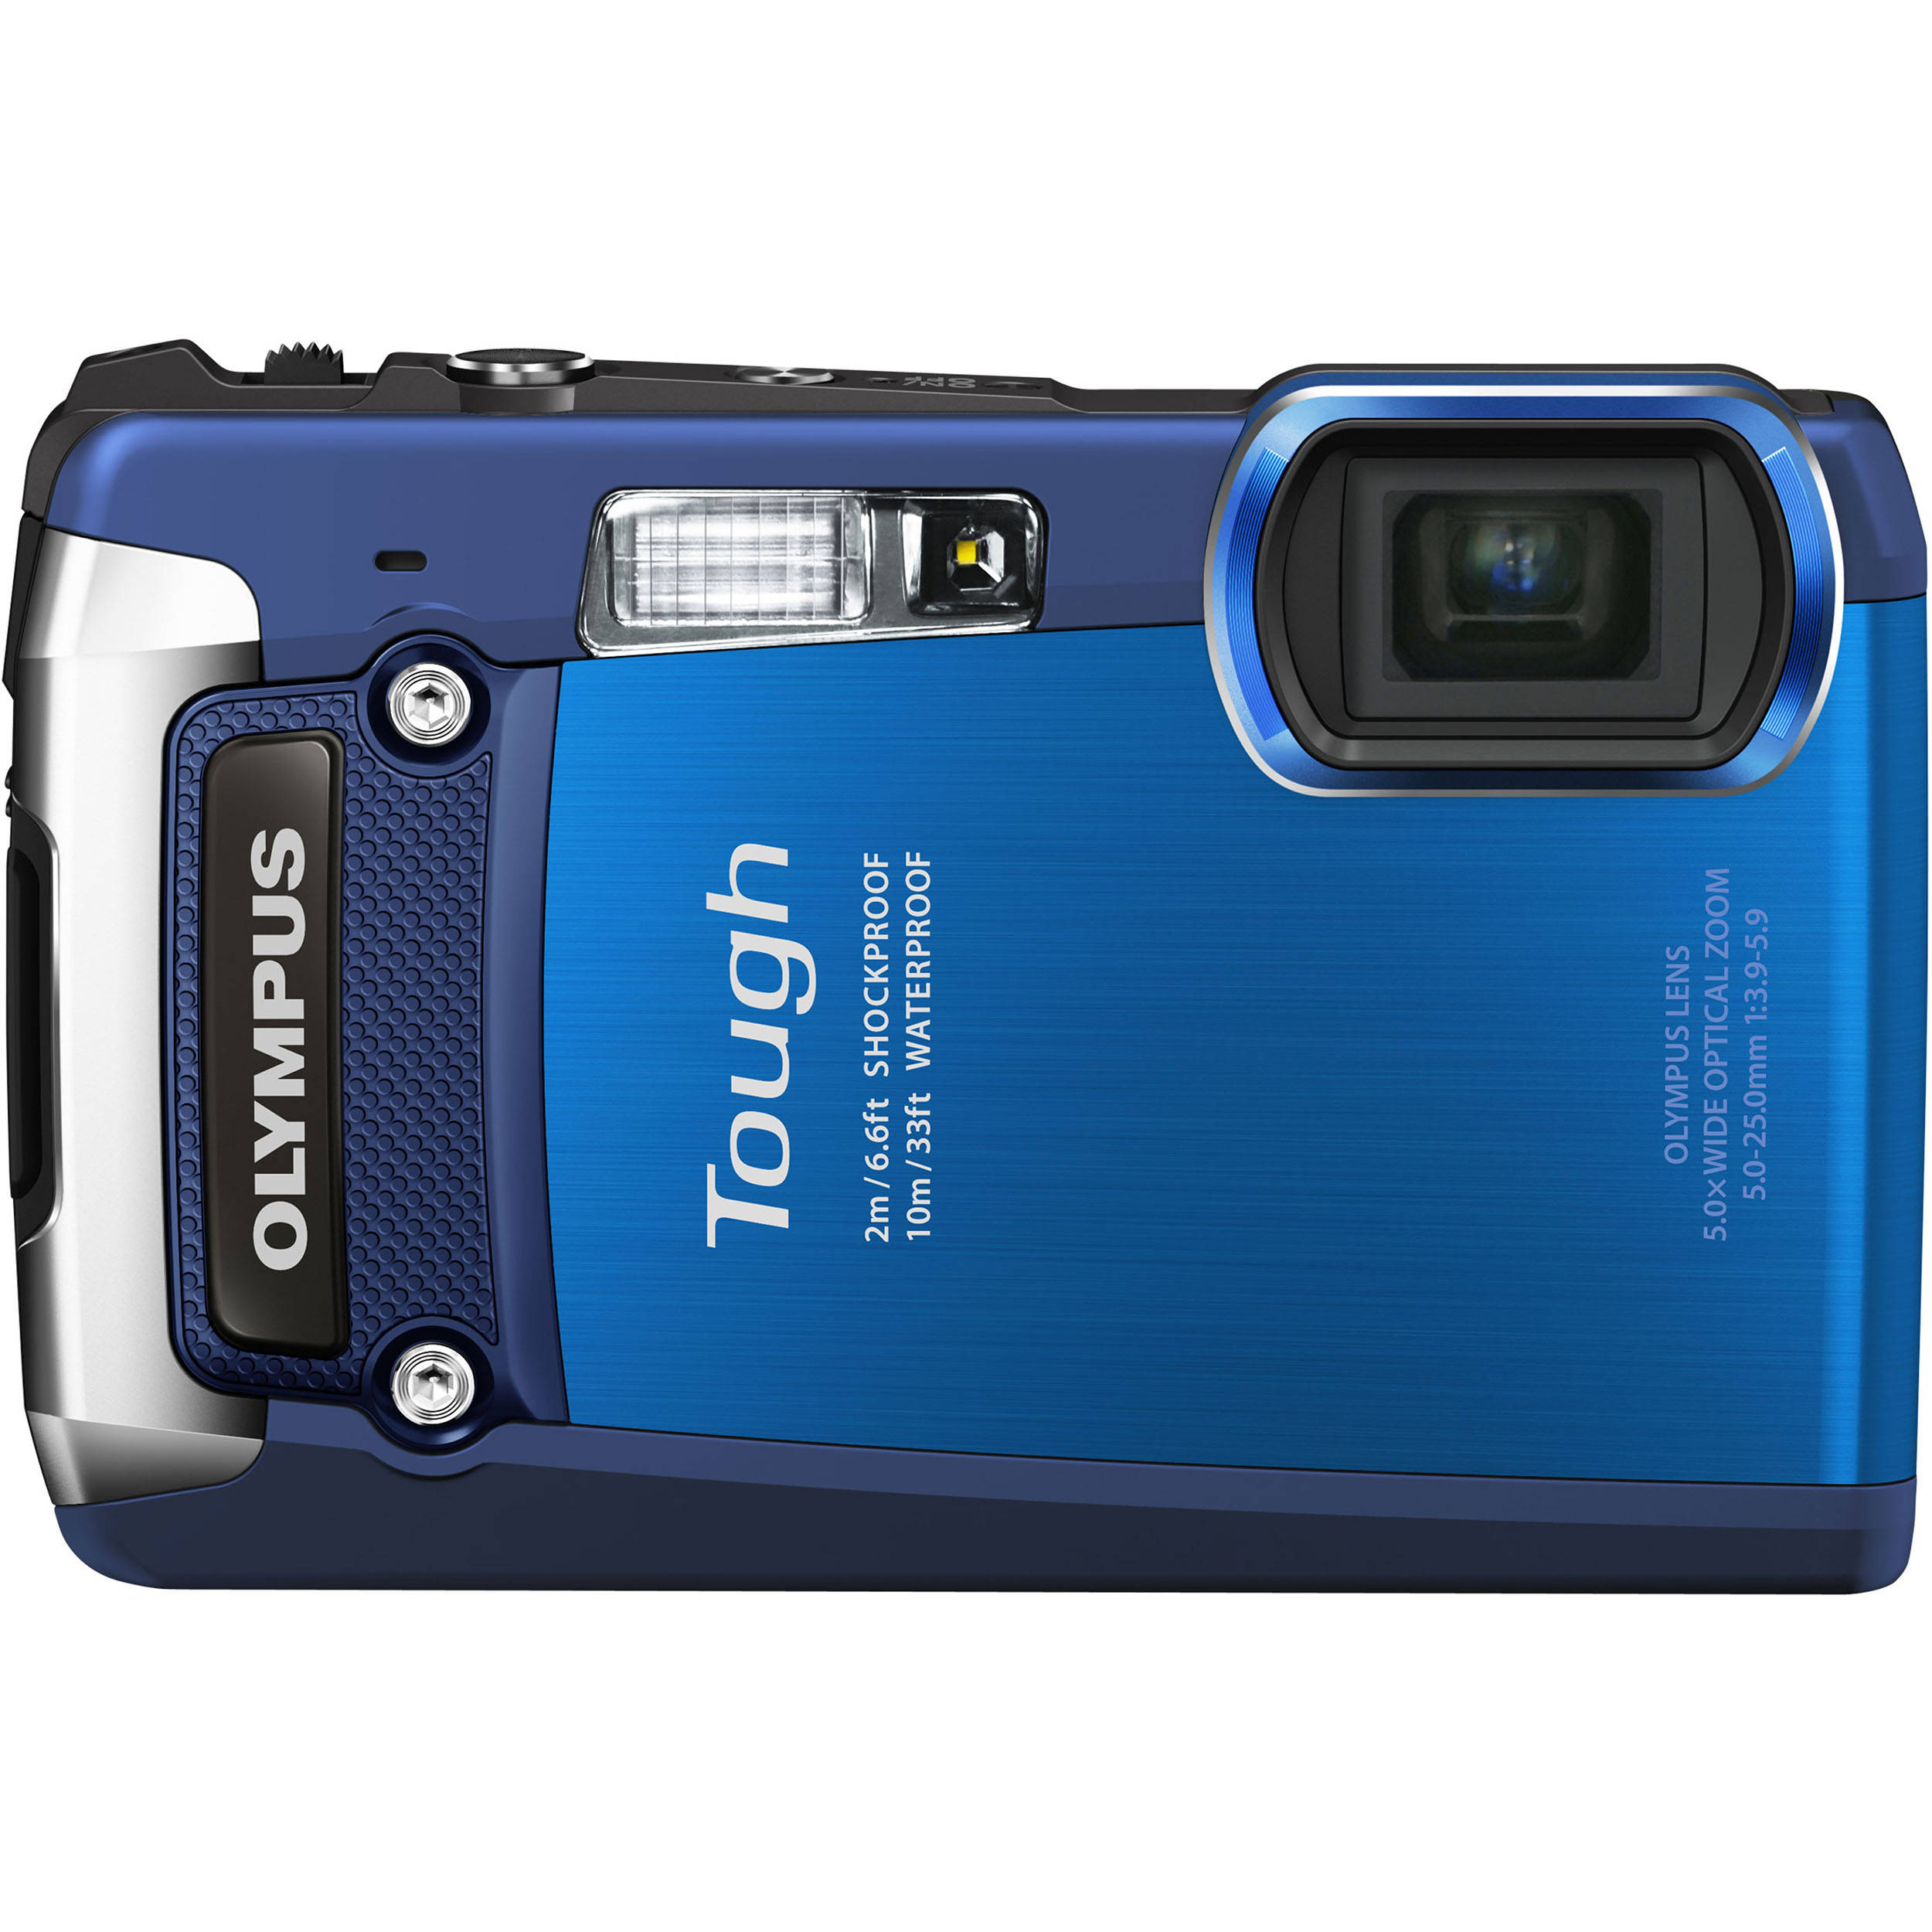 Olympus Tough Tg 0 Ihs Digital Camera Blue Vuu000 B H